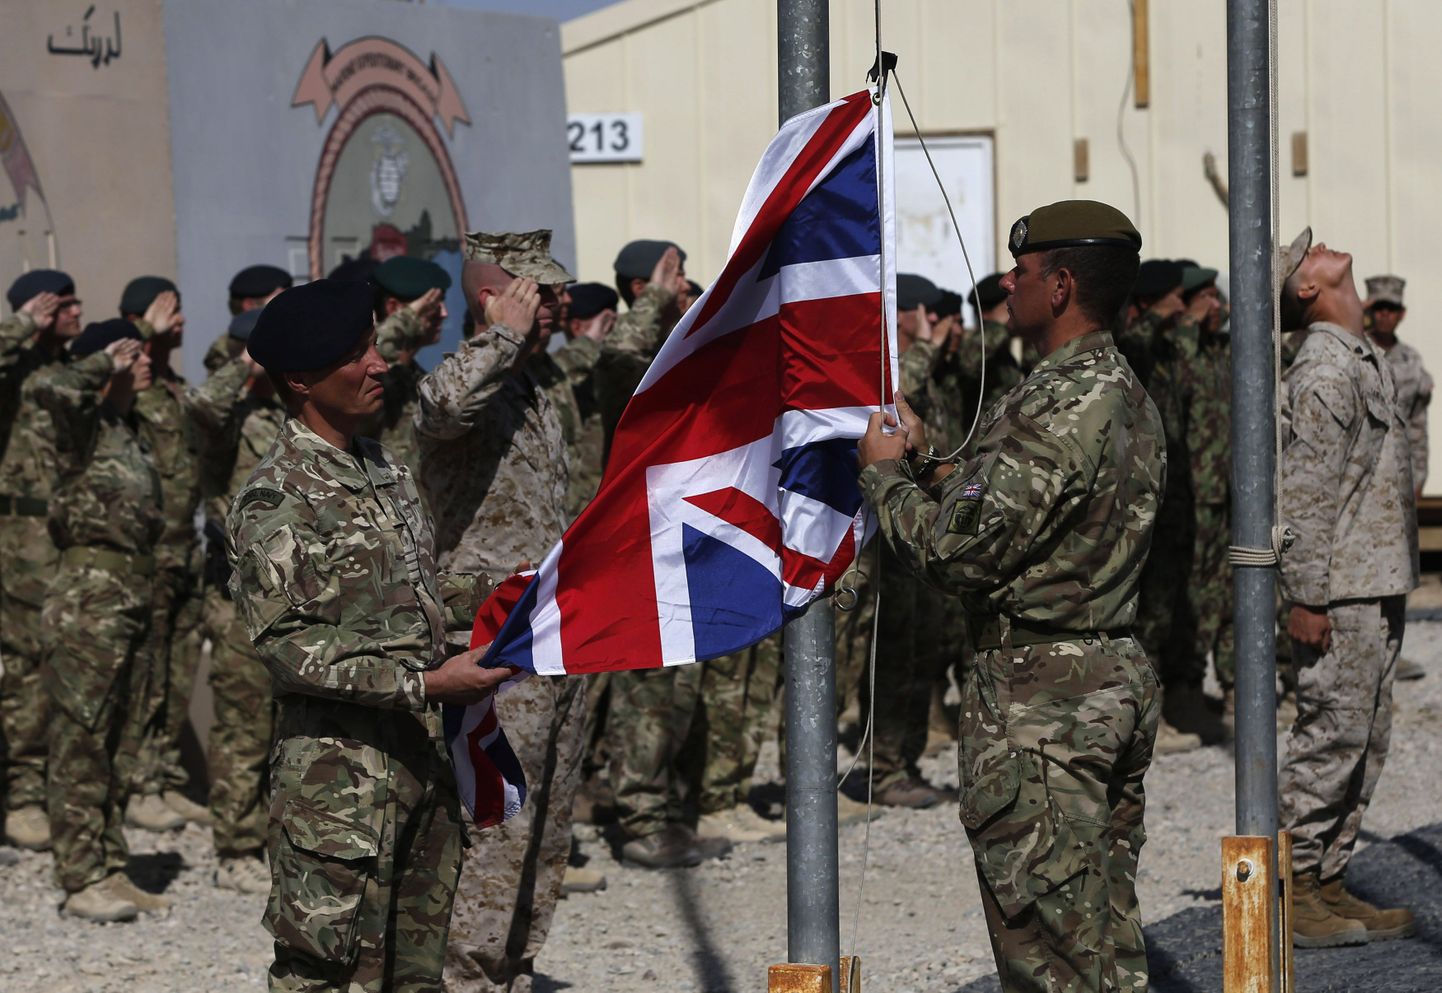 Briti sõdurid langetasid Suurbritannia lipu Helmandis 26. oktoobril.